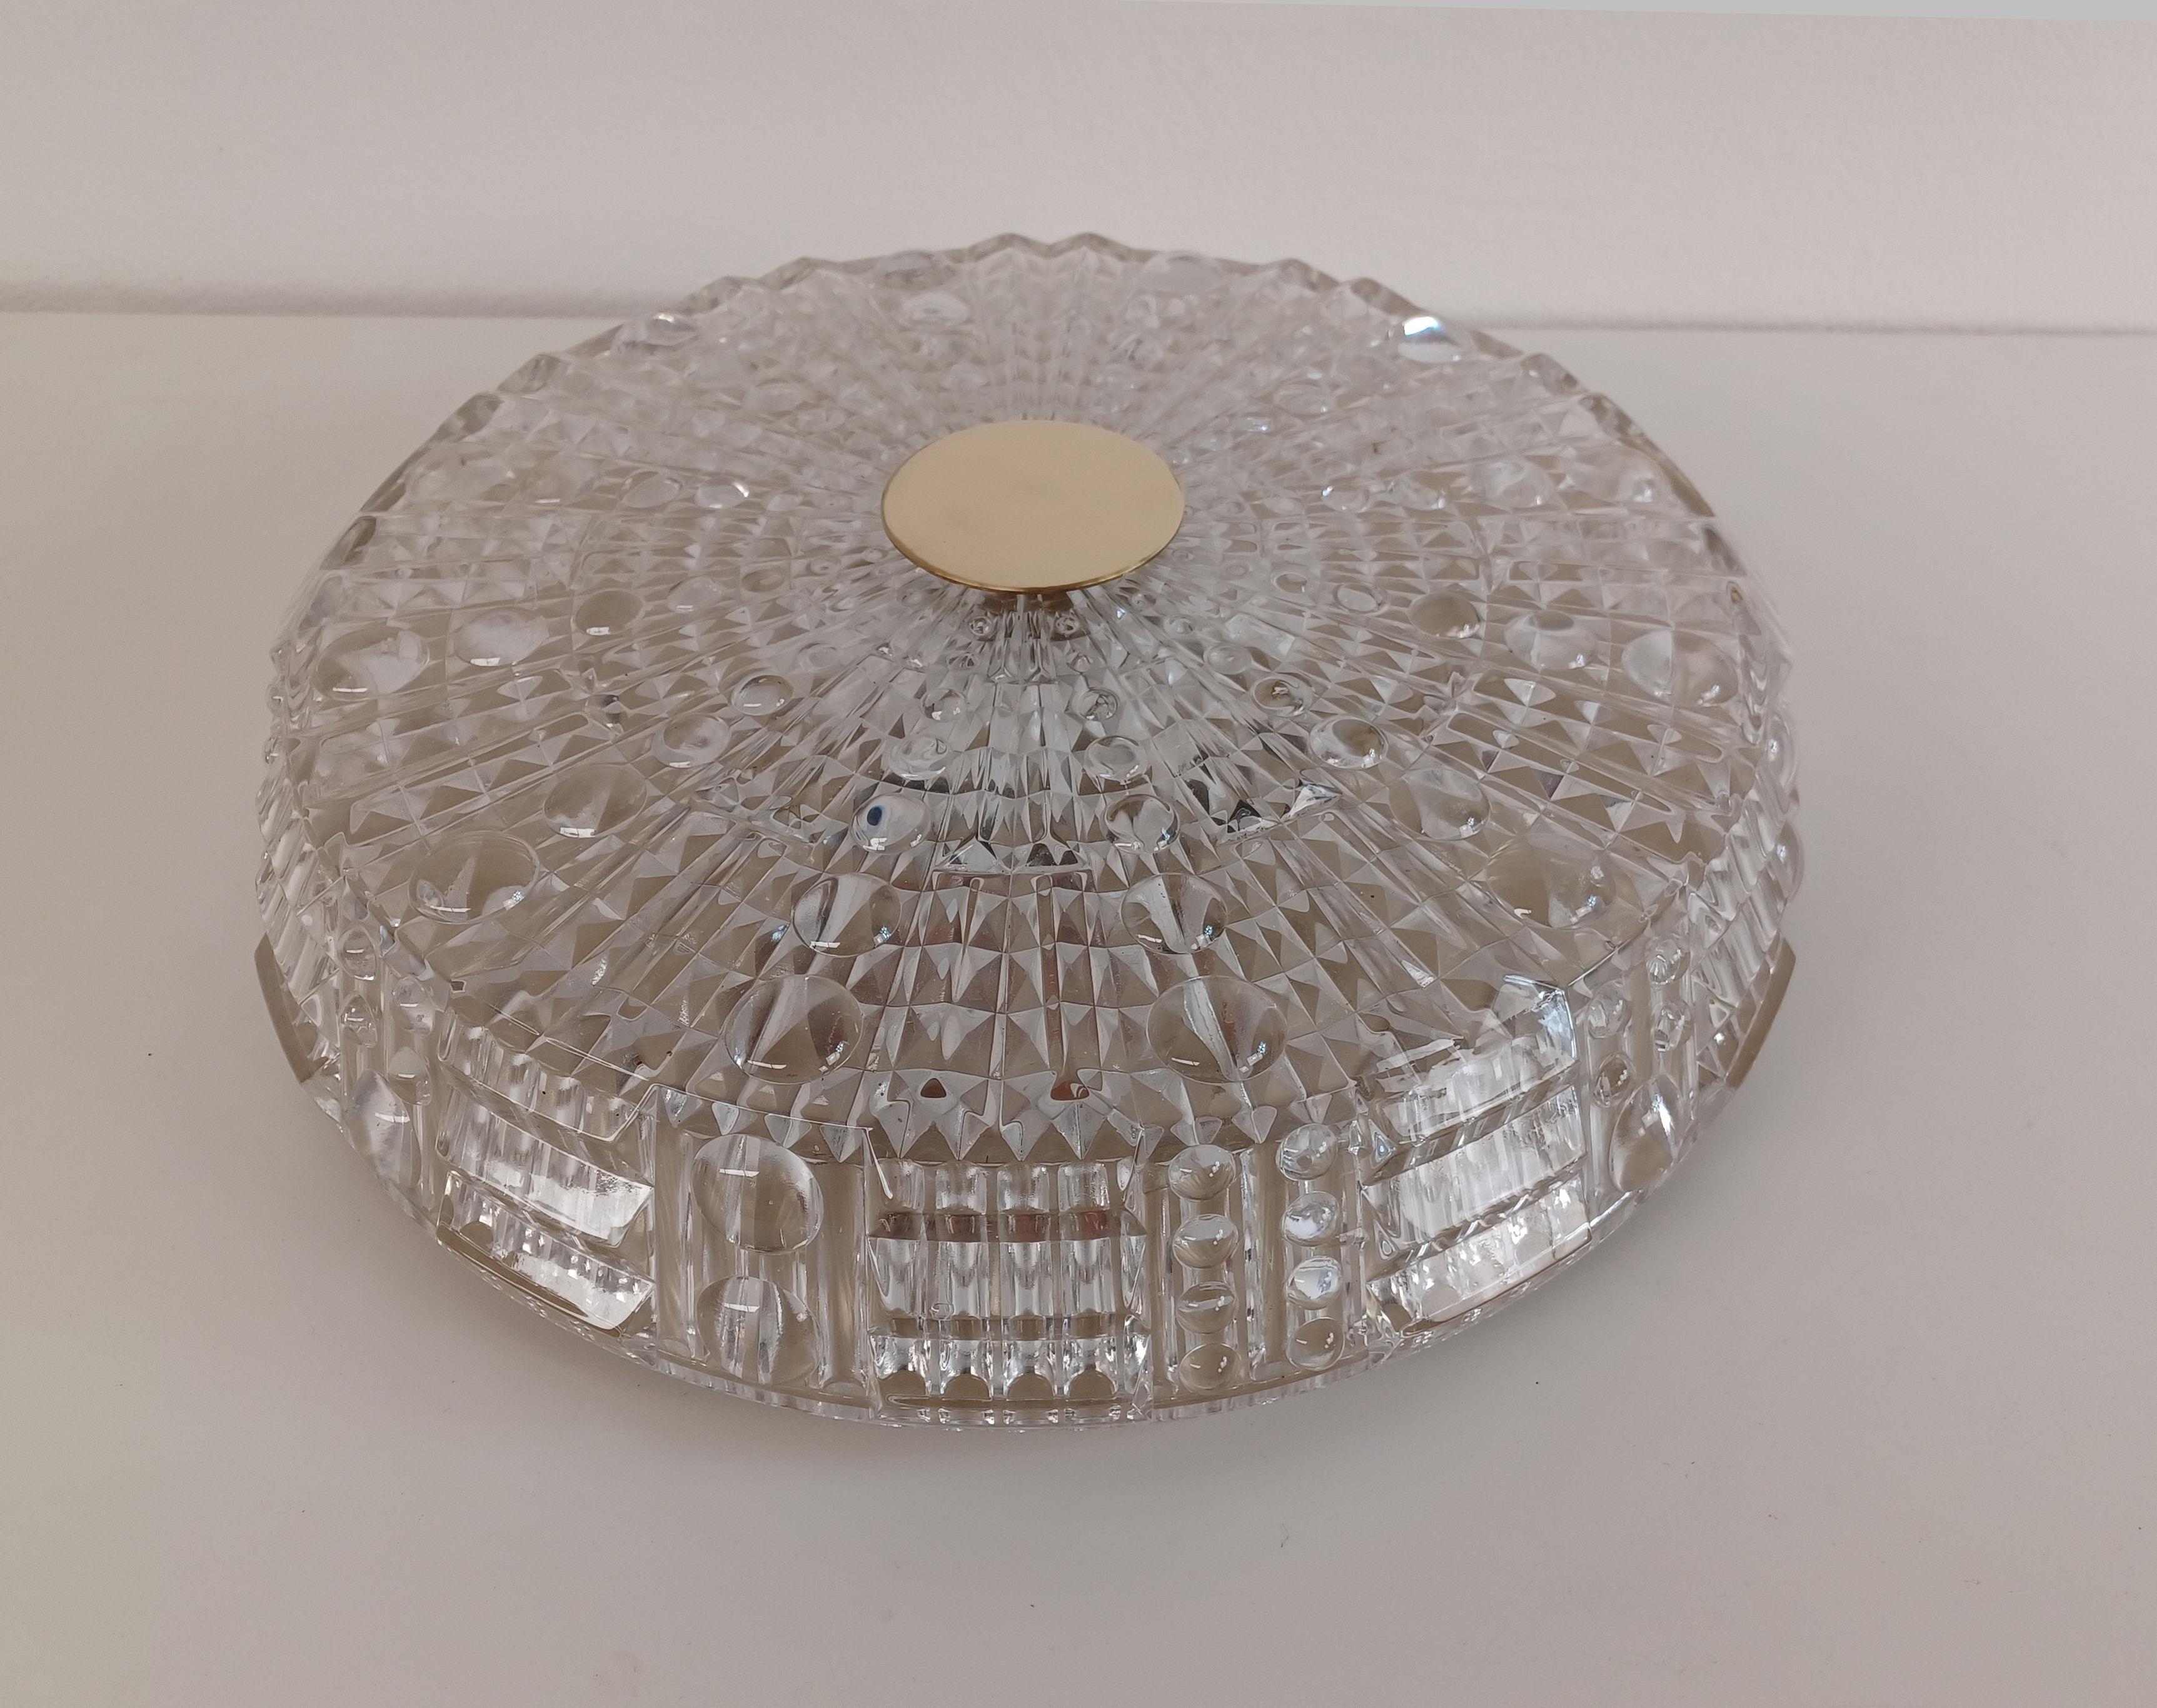 Lustre en verre et laiton de Carl Fagerlund pour Lyfa, datant du milieu du siècle dernier.

Le lustre encastré est un luminaire à 6 lumières entièrement recâblé.  avec un grand abat-jour en verre épais dont la surface structurée à l'extérieur fait